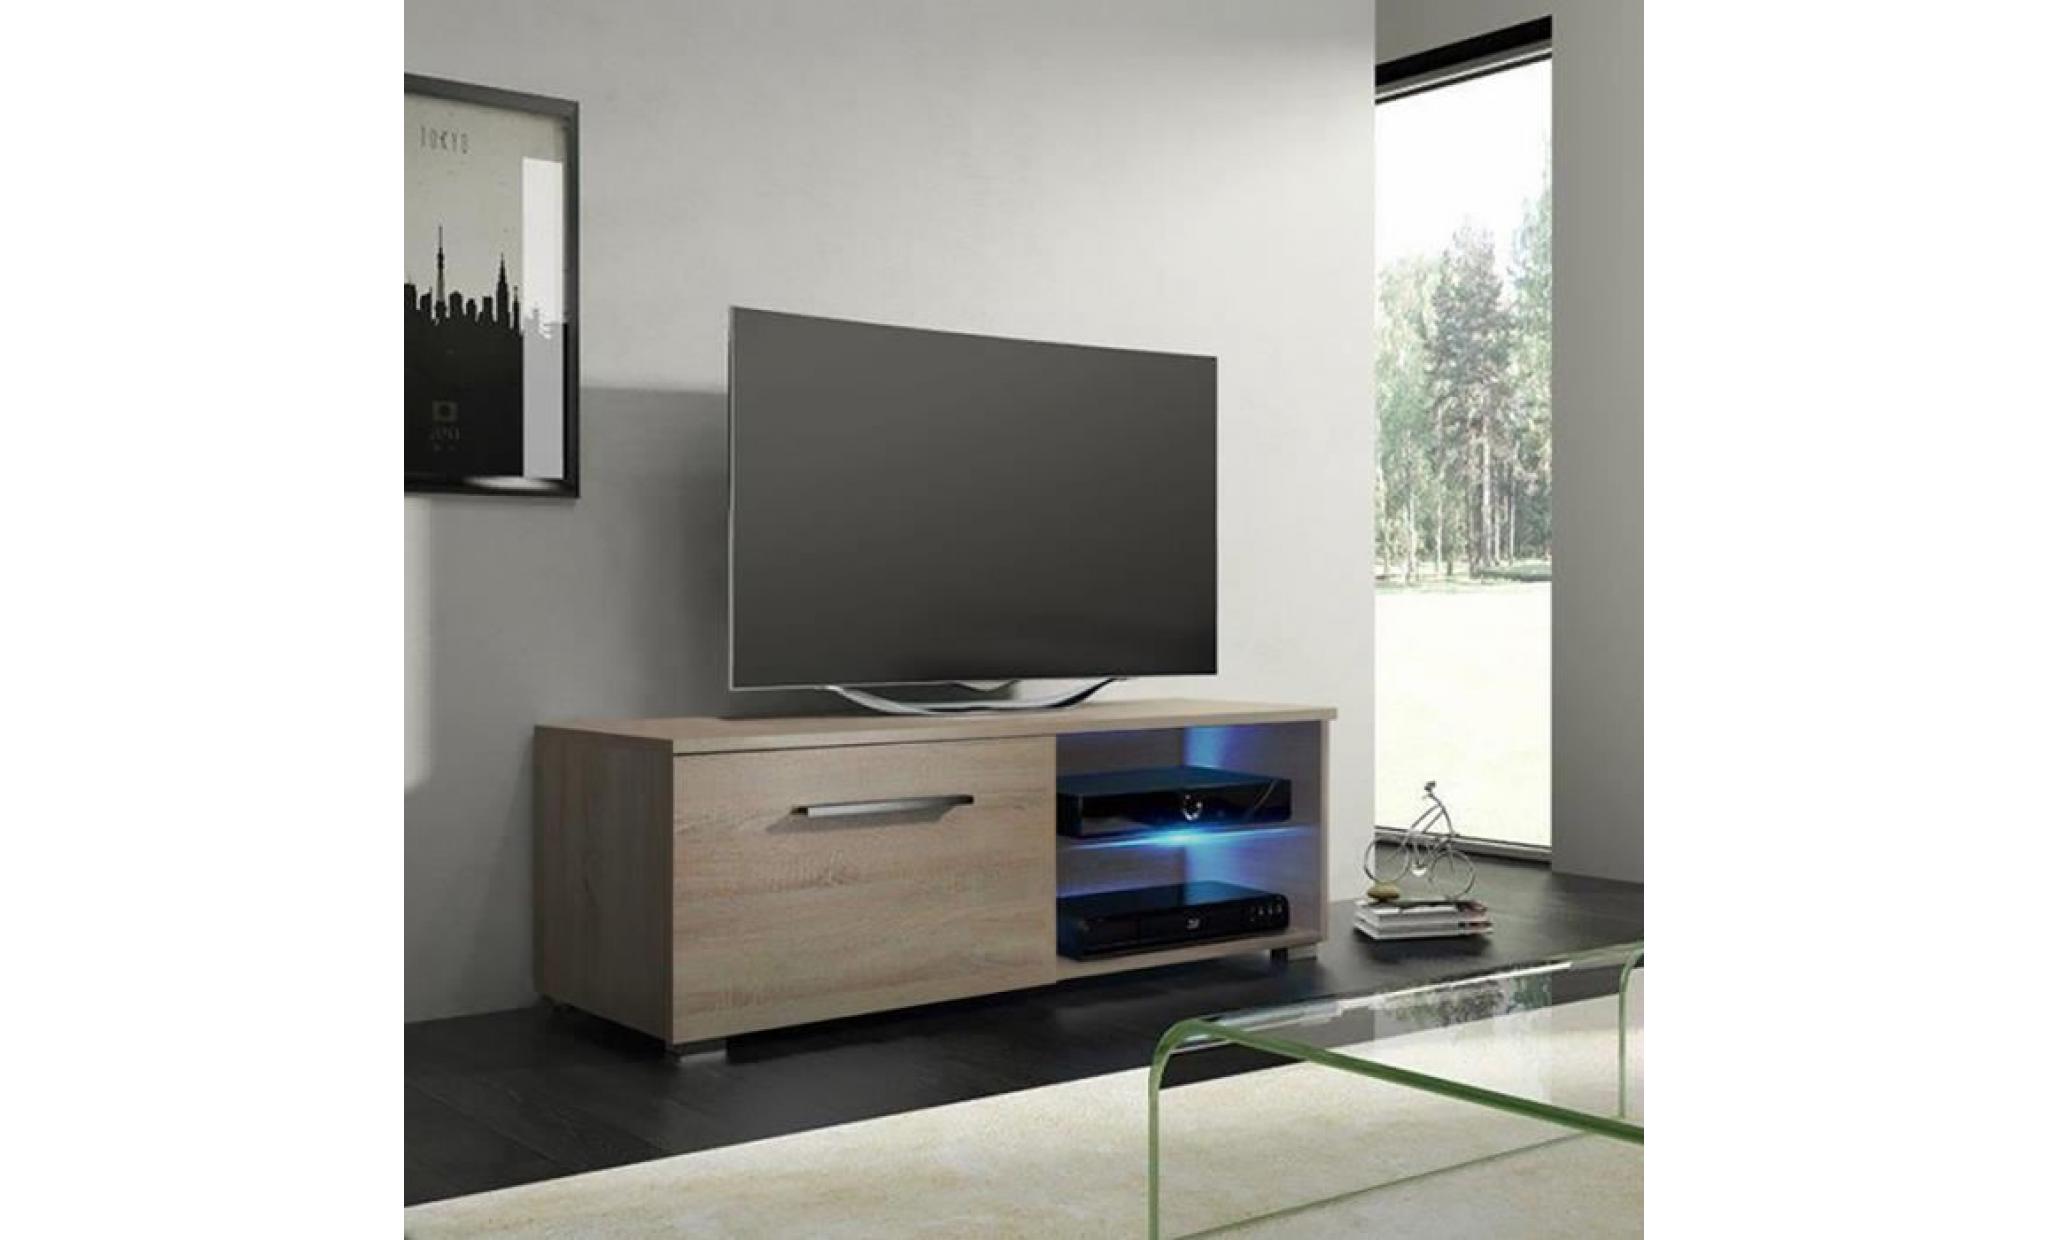 meuble tv / meuble salon   tenus single   100 cm   effet chêne   avec led   2 compartiments ouverts   style classique